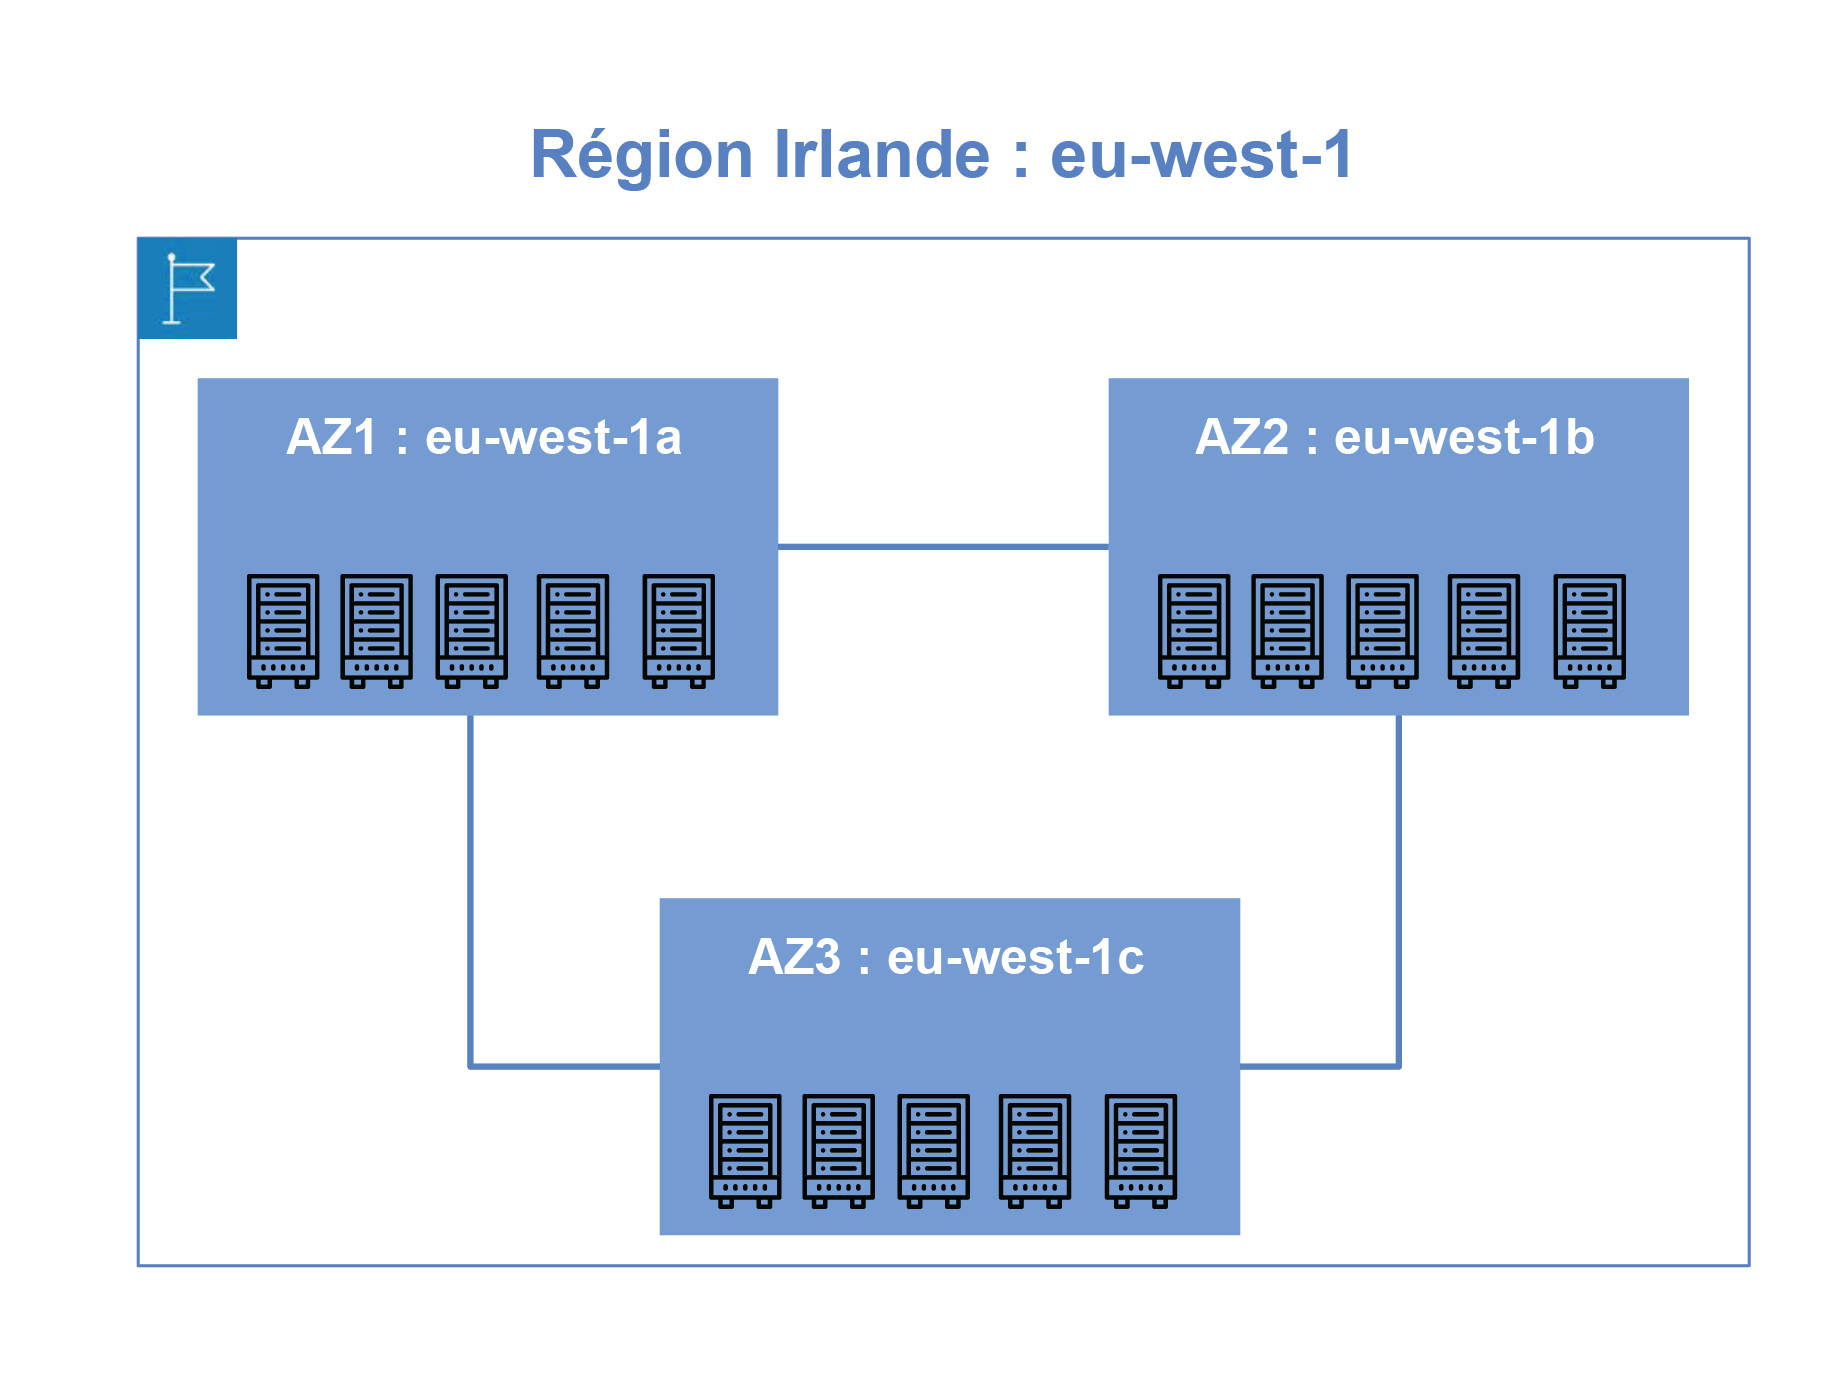 La région Irlande eu-west-1 est composée de 3 zones de disponibilités AZ1, AZ2 et AZ3.